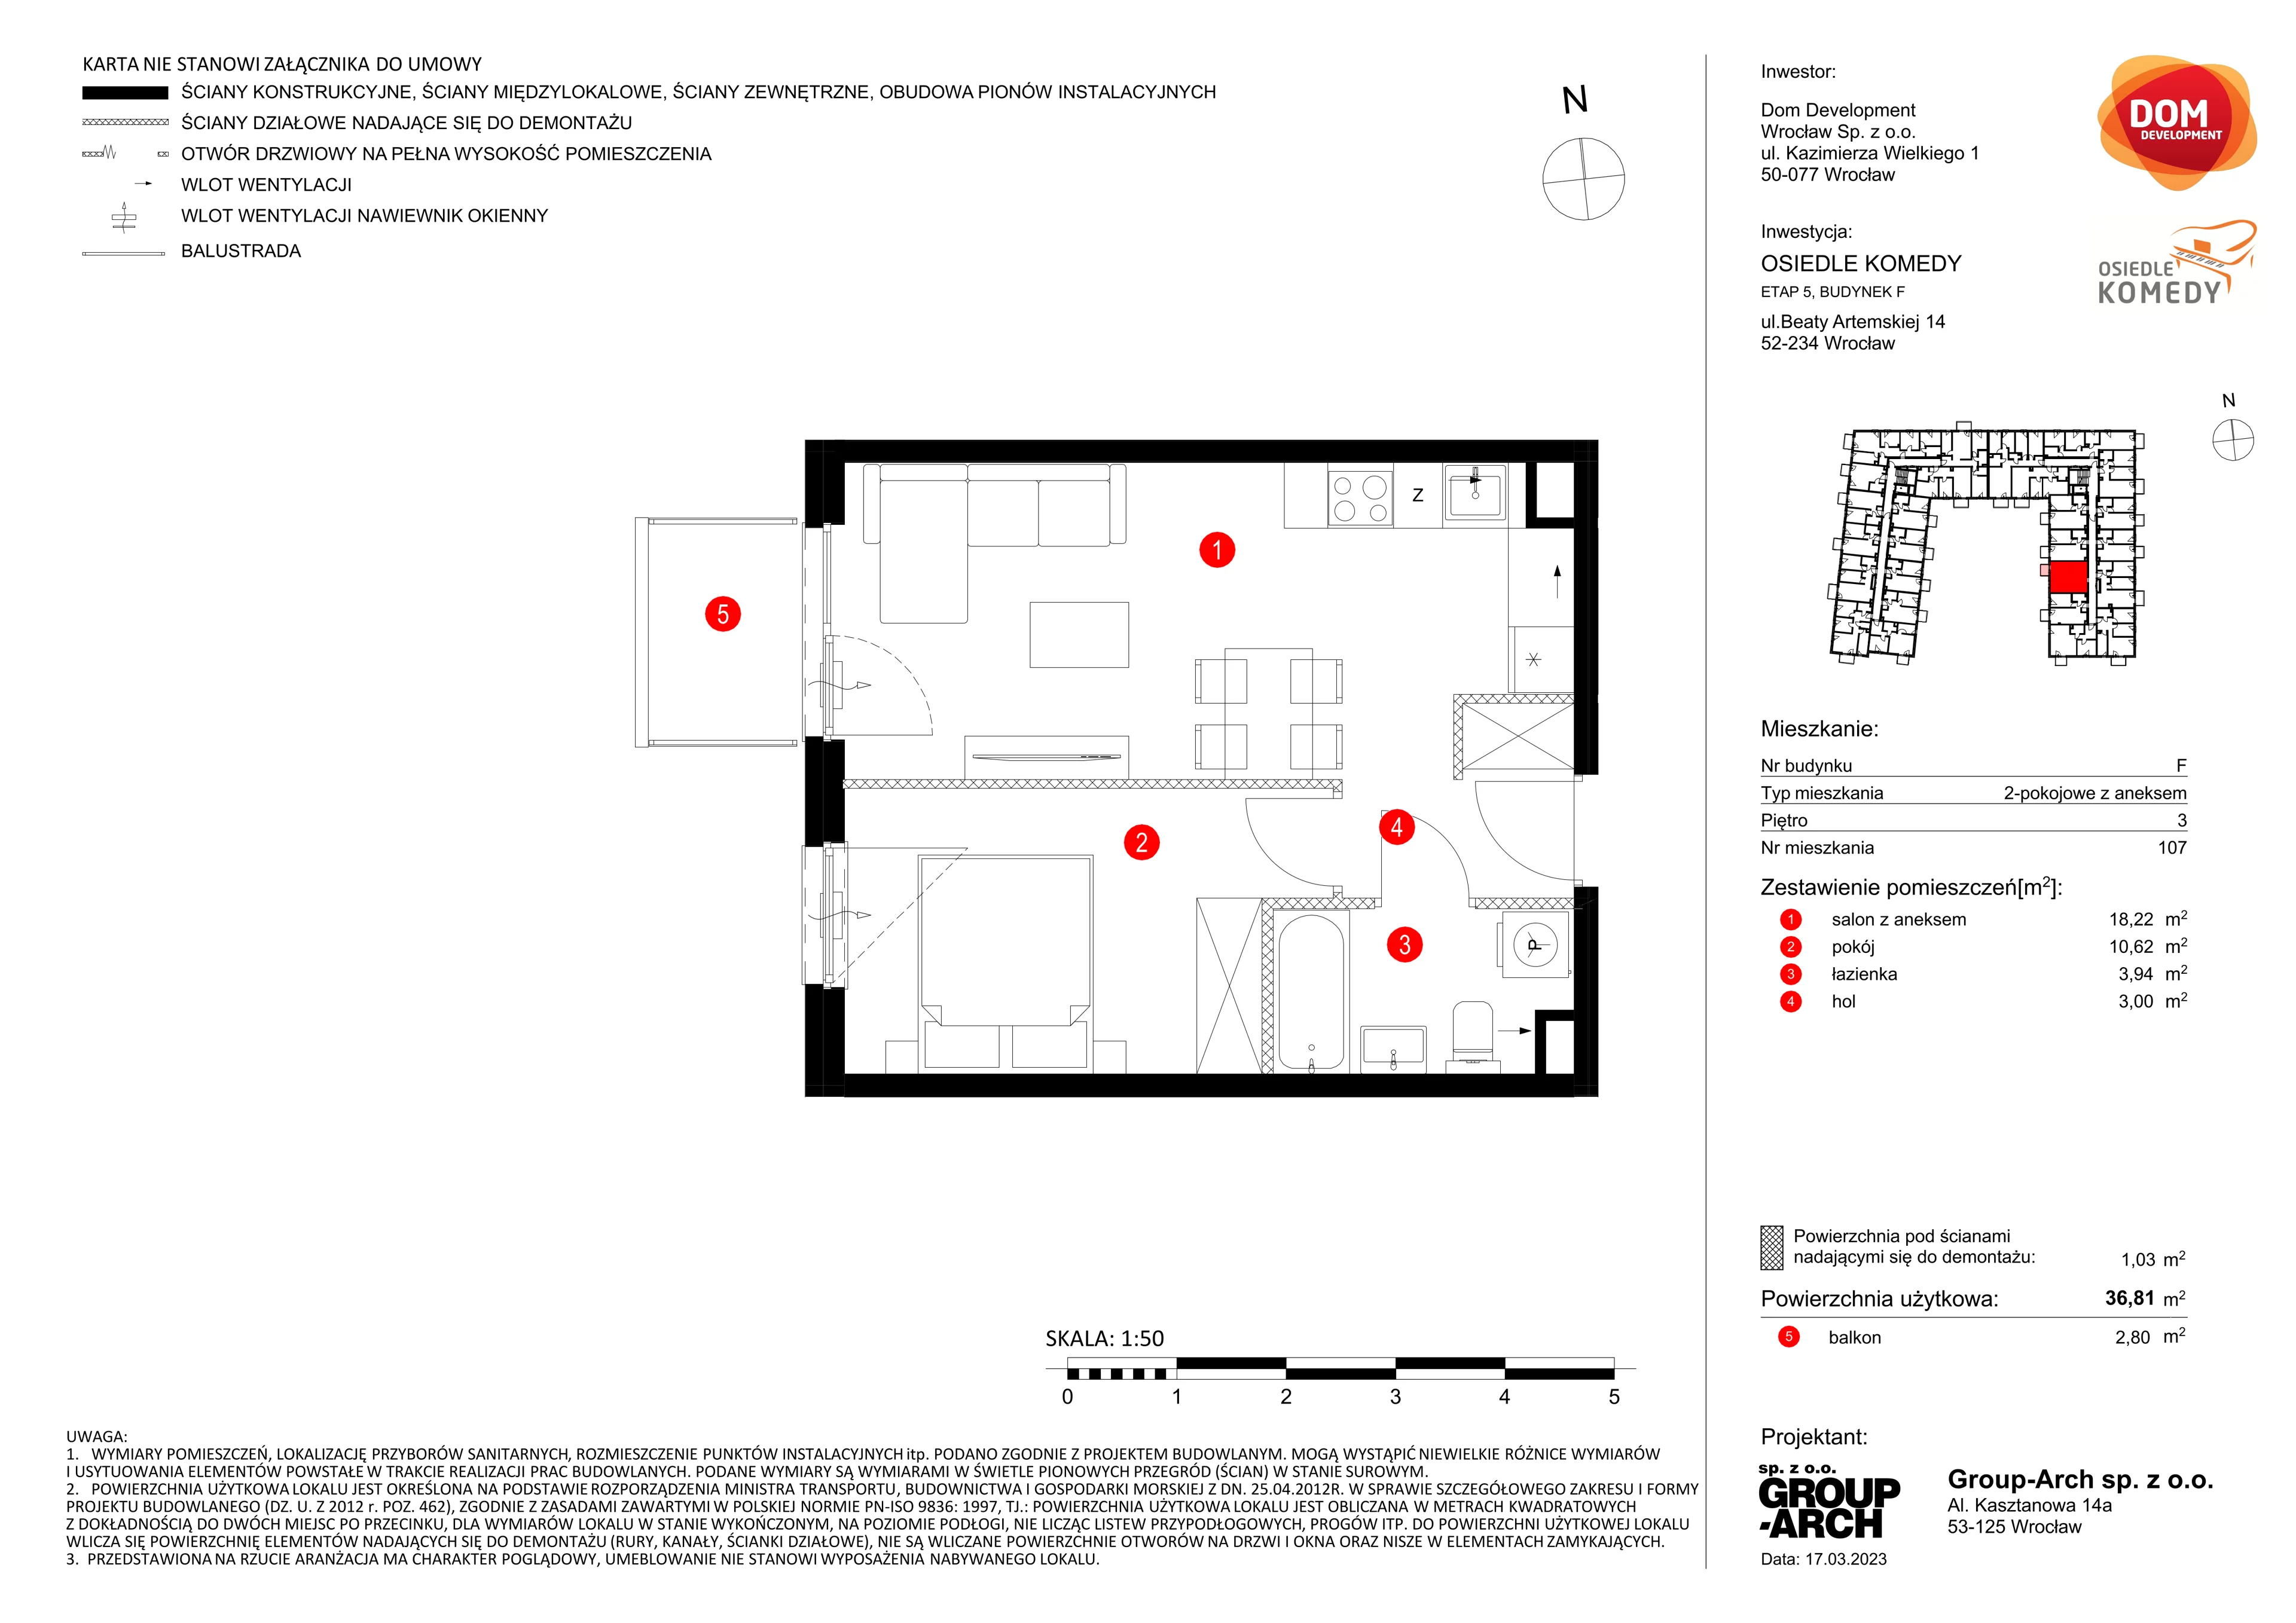 Mieszkanie 36,81 m², piętro 3, oferta nr F/107, Osiedle Komedy, Wrocław, Jagodno, Krzyki, ul. Komedy 1B